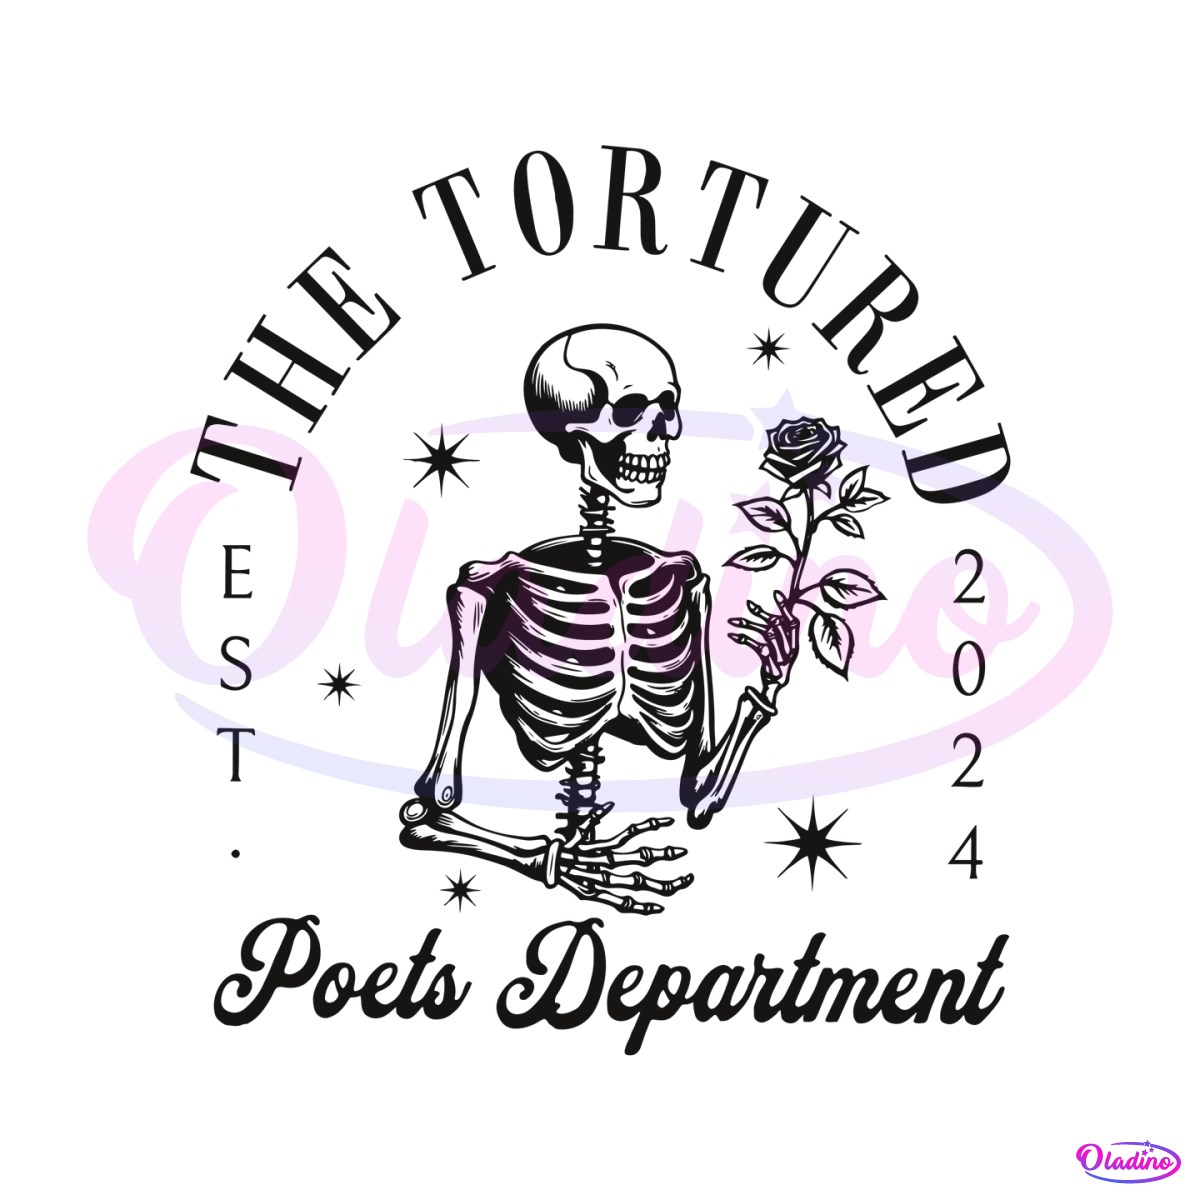 the-tortured-poets-department-skeleton-svg